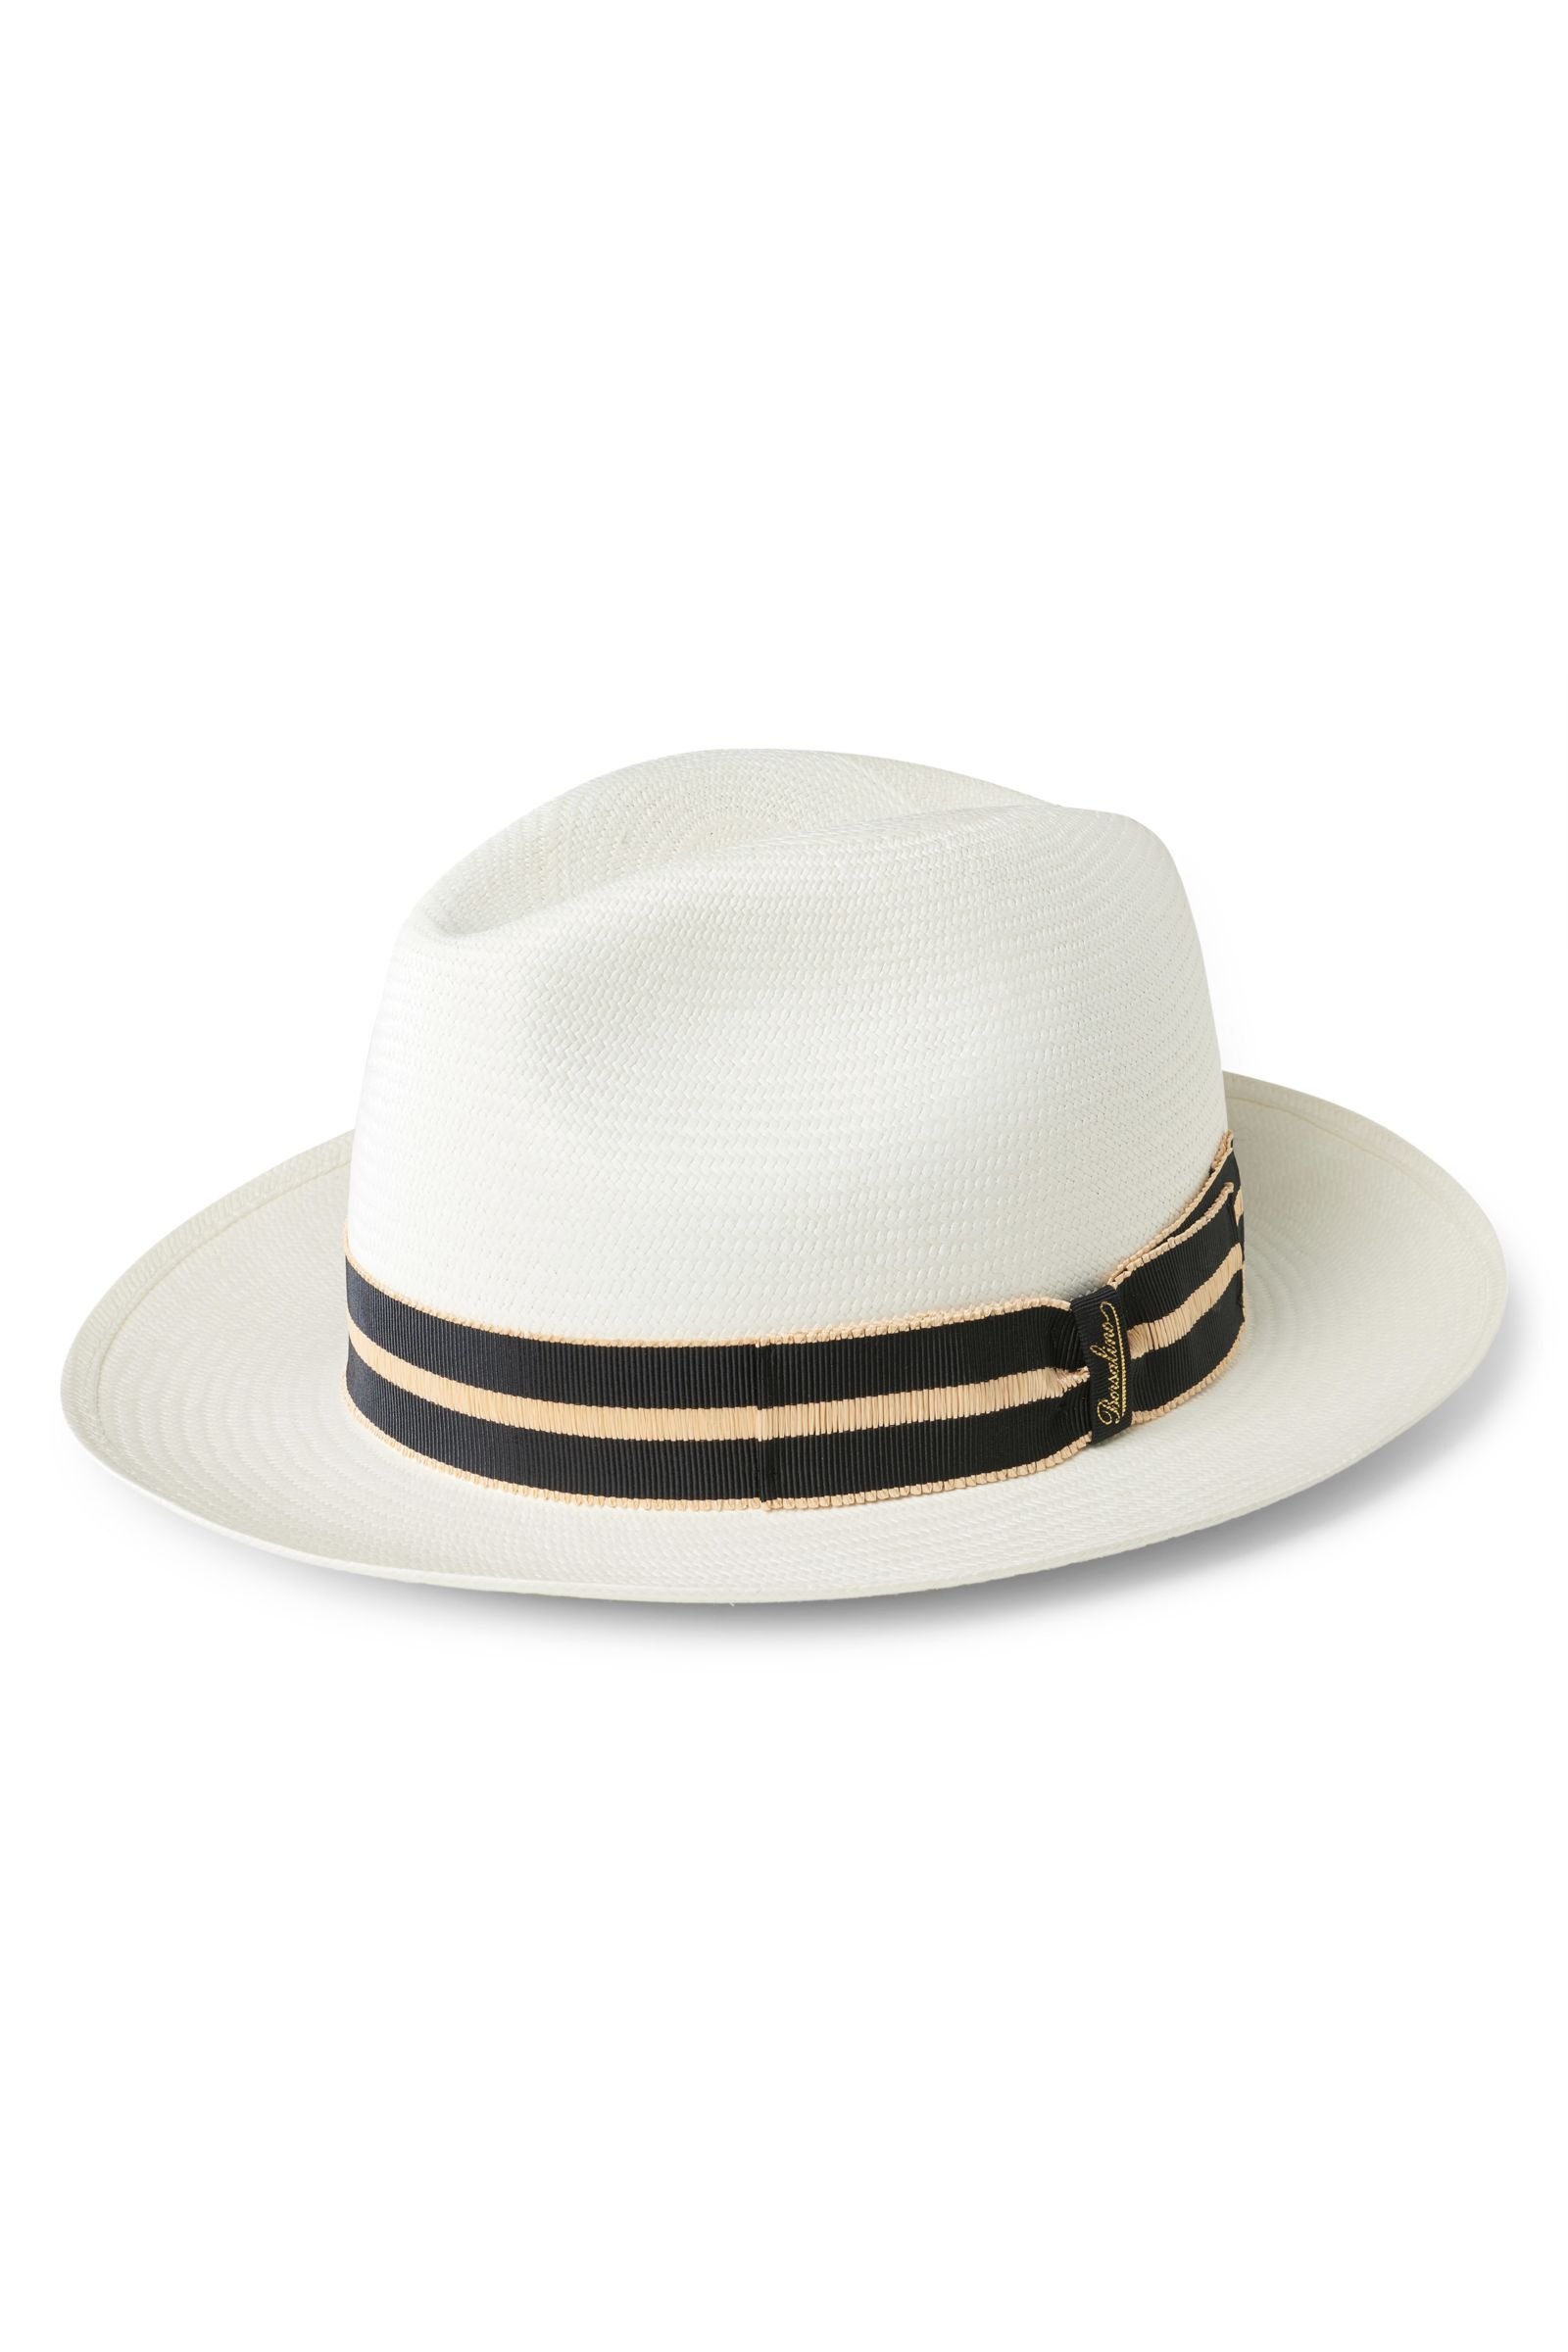 Panama hat cream